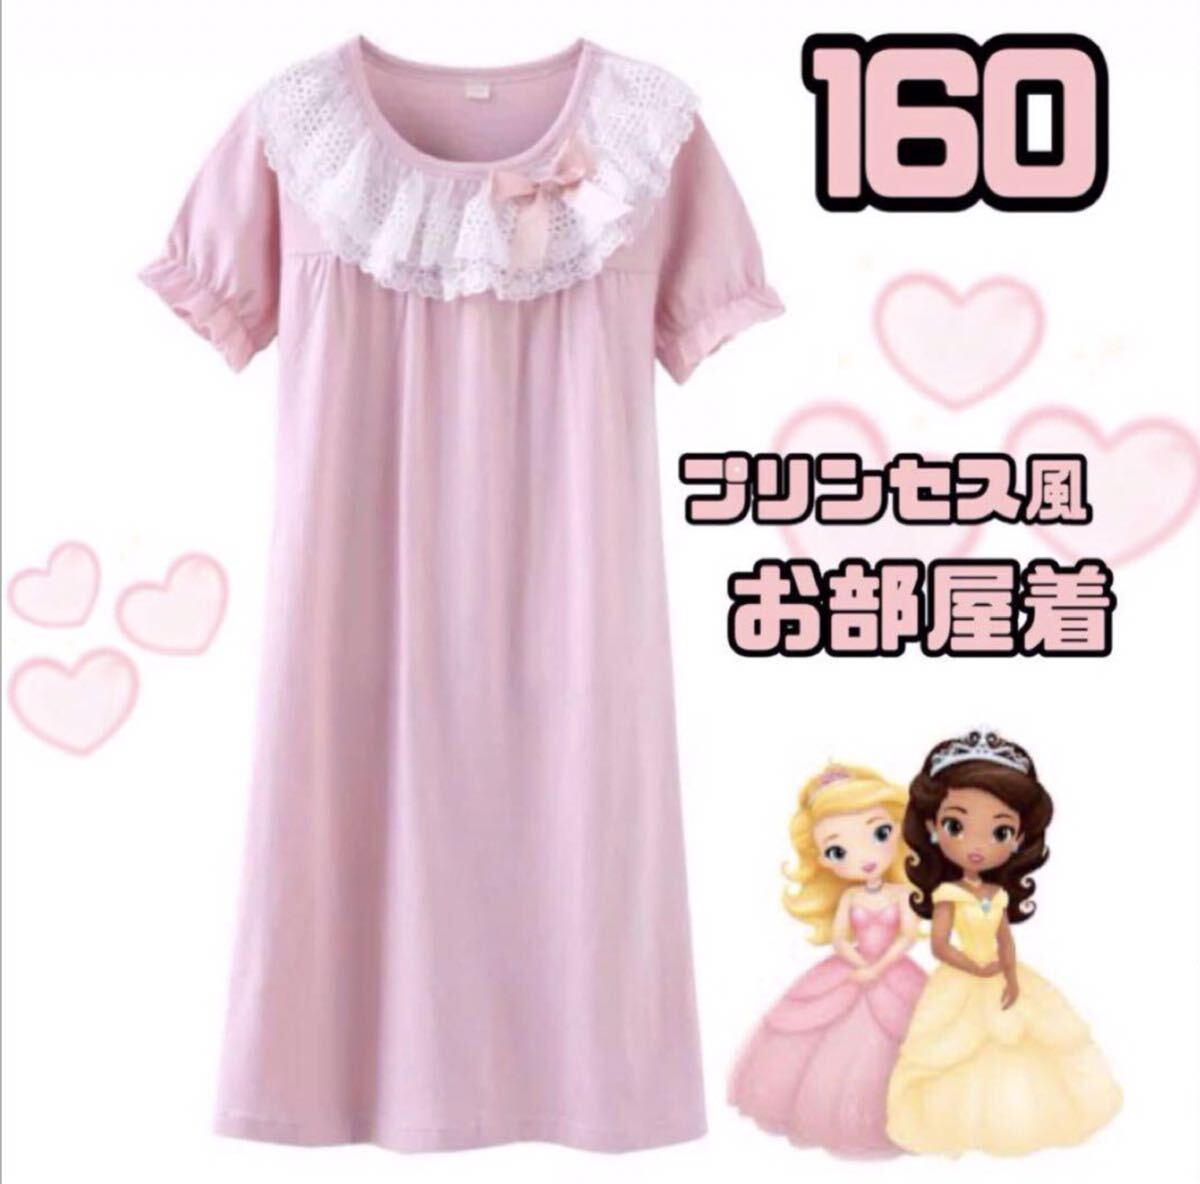 [ отправка в тот же день ] ребенок пижама 160 девочка One-piece часть магазин надеты короткий рукав 